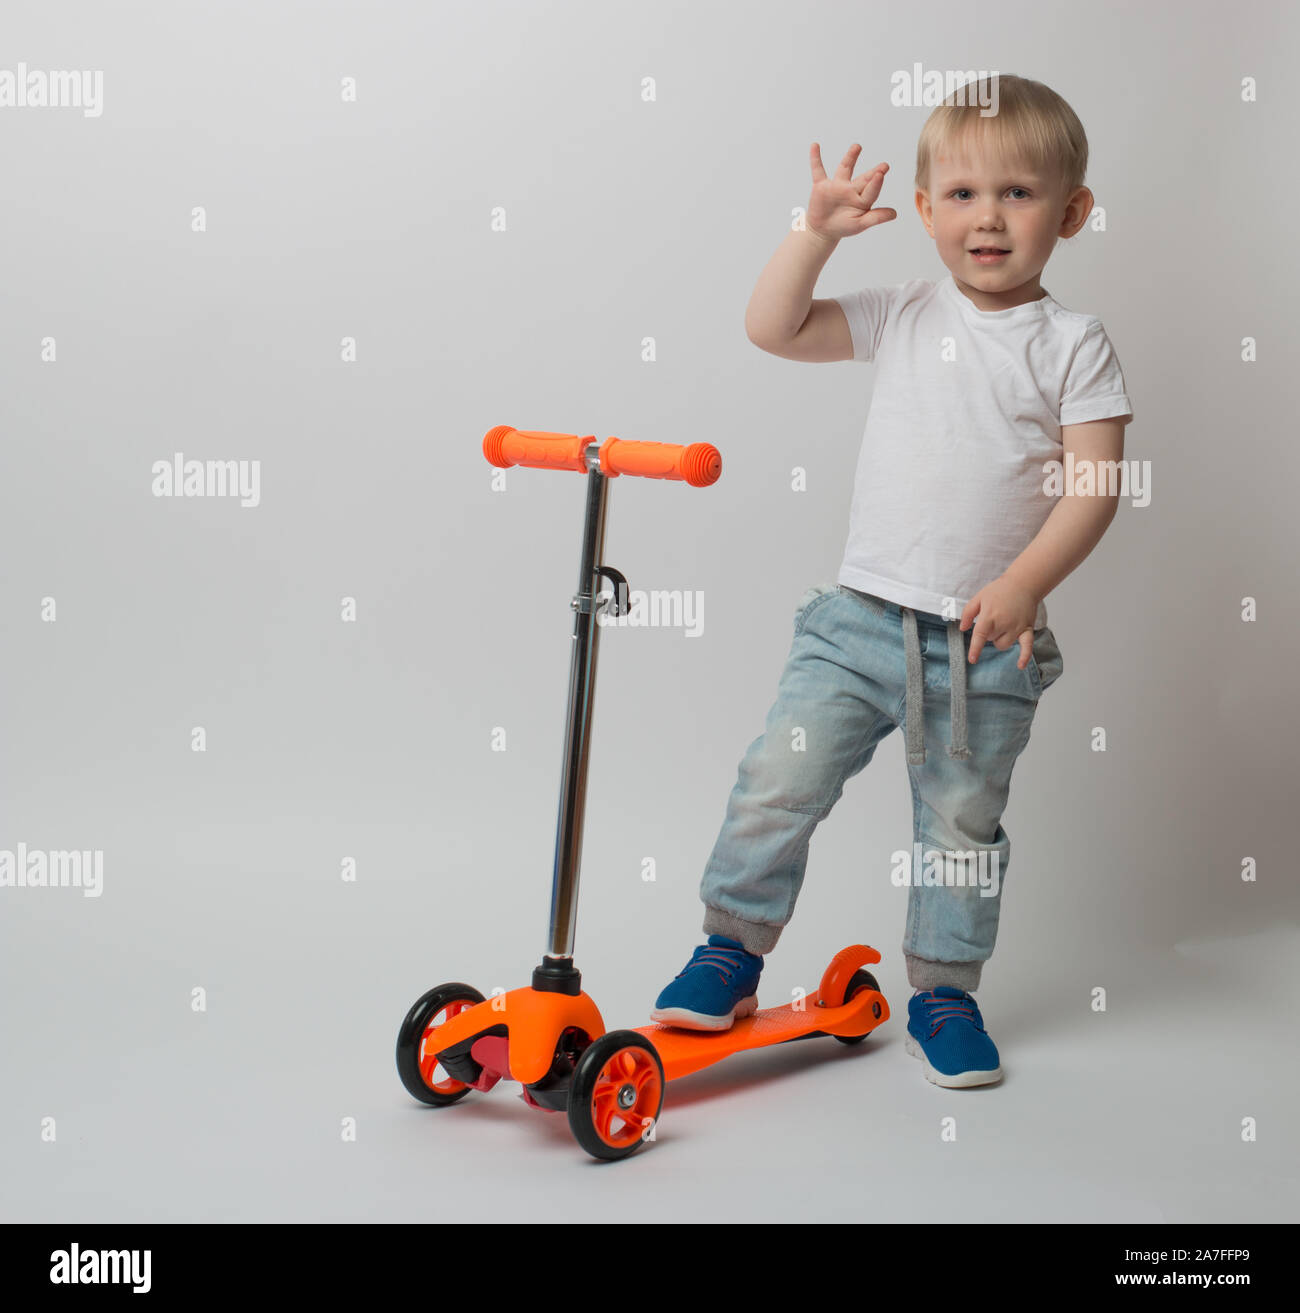 Kleinkind, Ein sehr fröhliches Kind, hob seine Hand bleiben auf dem Roller. Konzept für die Werbung und Artikel über Spielzeug und Fahrräder auf einem weißen backgrou Stockfoto